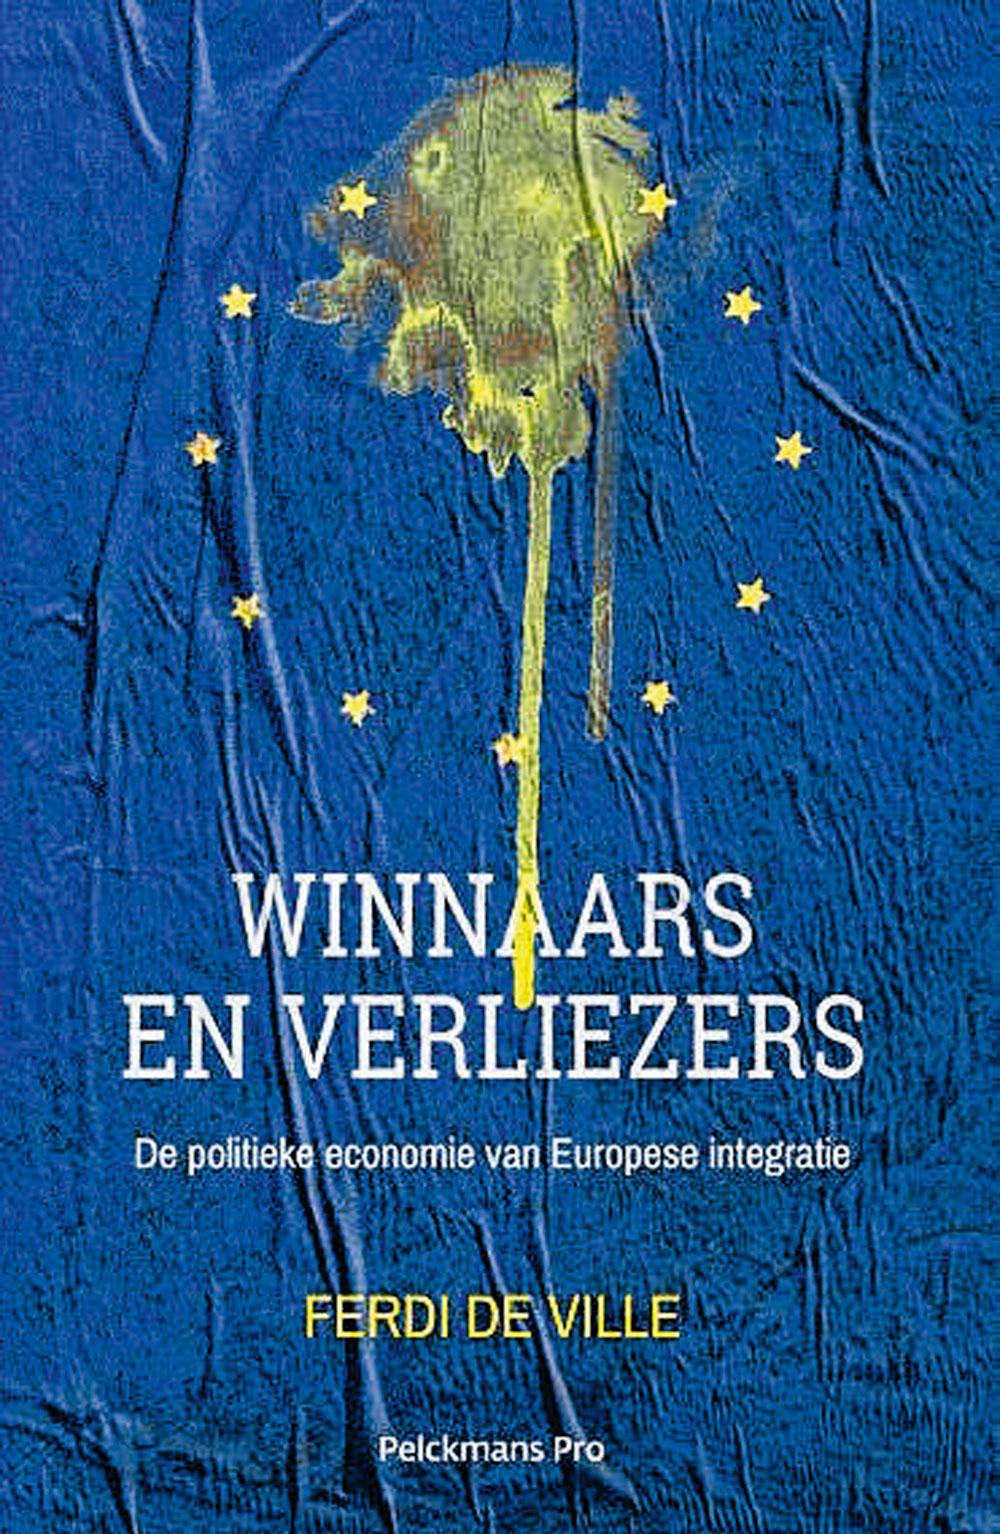 Ferdi De Ville, Winnaars en verliezers, uitg. Pelckmans Pro, 24,99 euro.